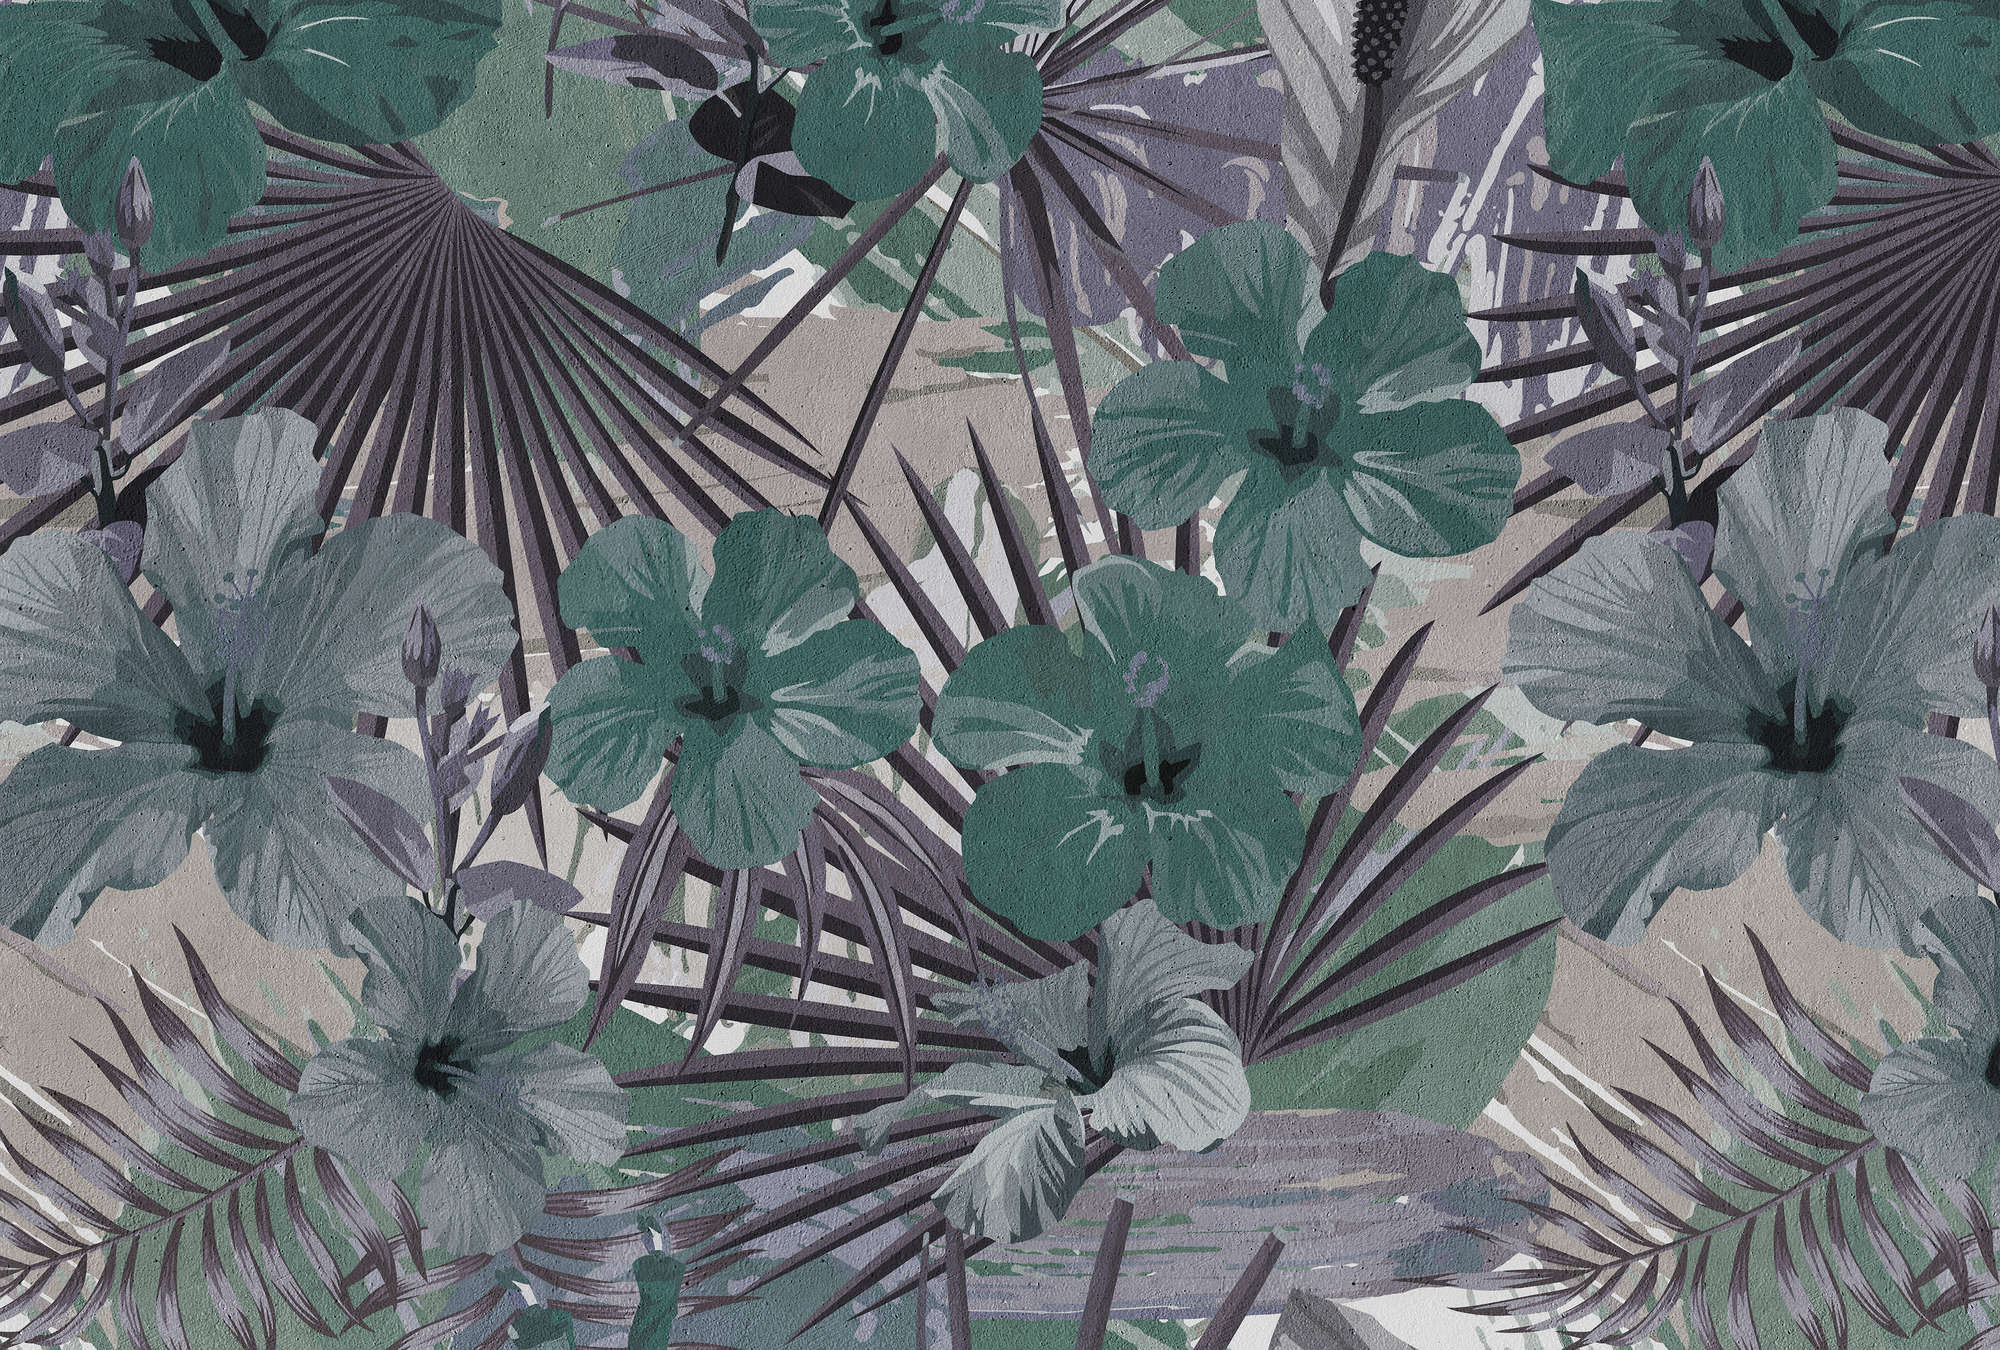             Papel pintado de palmeras y flores de la selva - Verde, morado
        